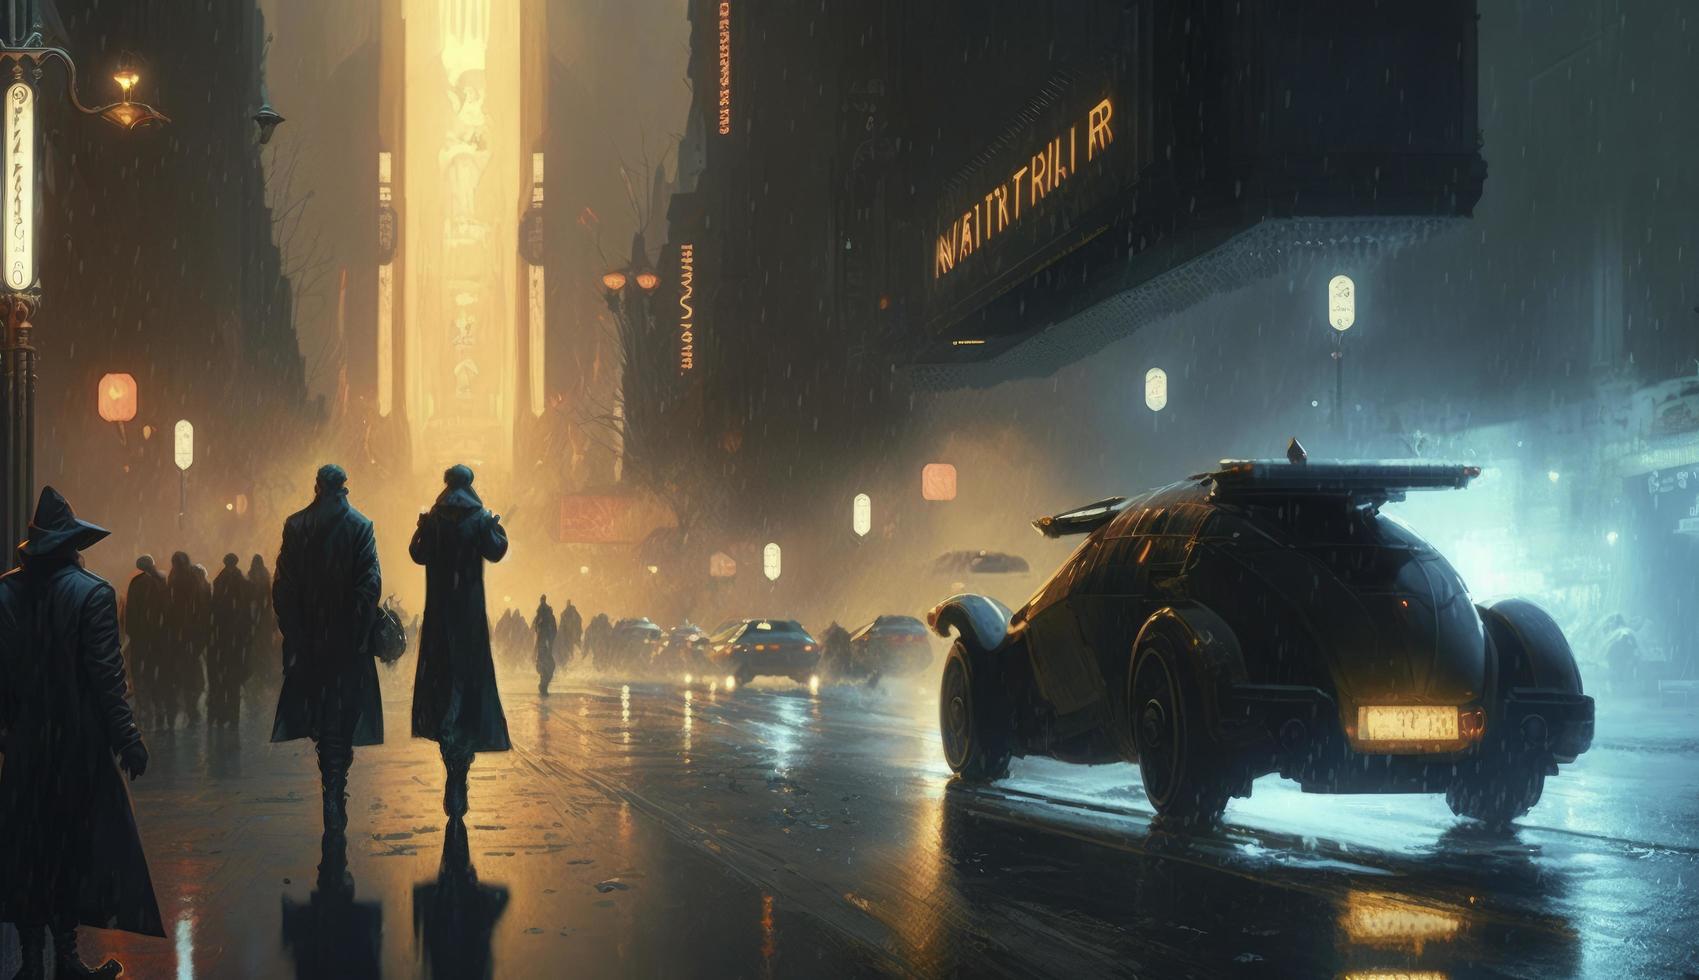 une scène de une science fiction film, comme lame coureur, avec une futuriste paysage urbain dans le pluie, avec en volant voitures, néon lumières, et gens dans longue manteaux pressé, produire ai photo